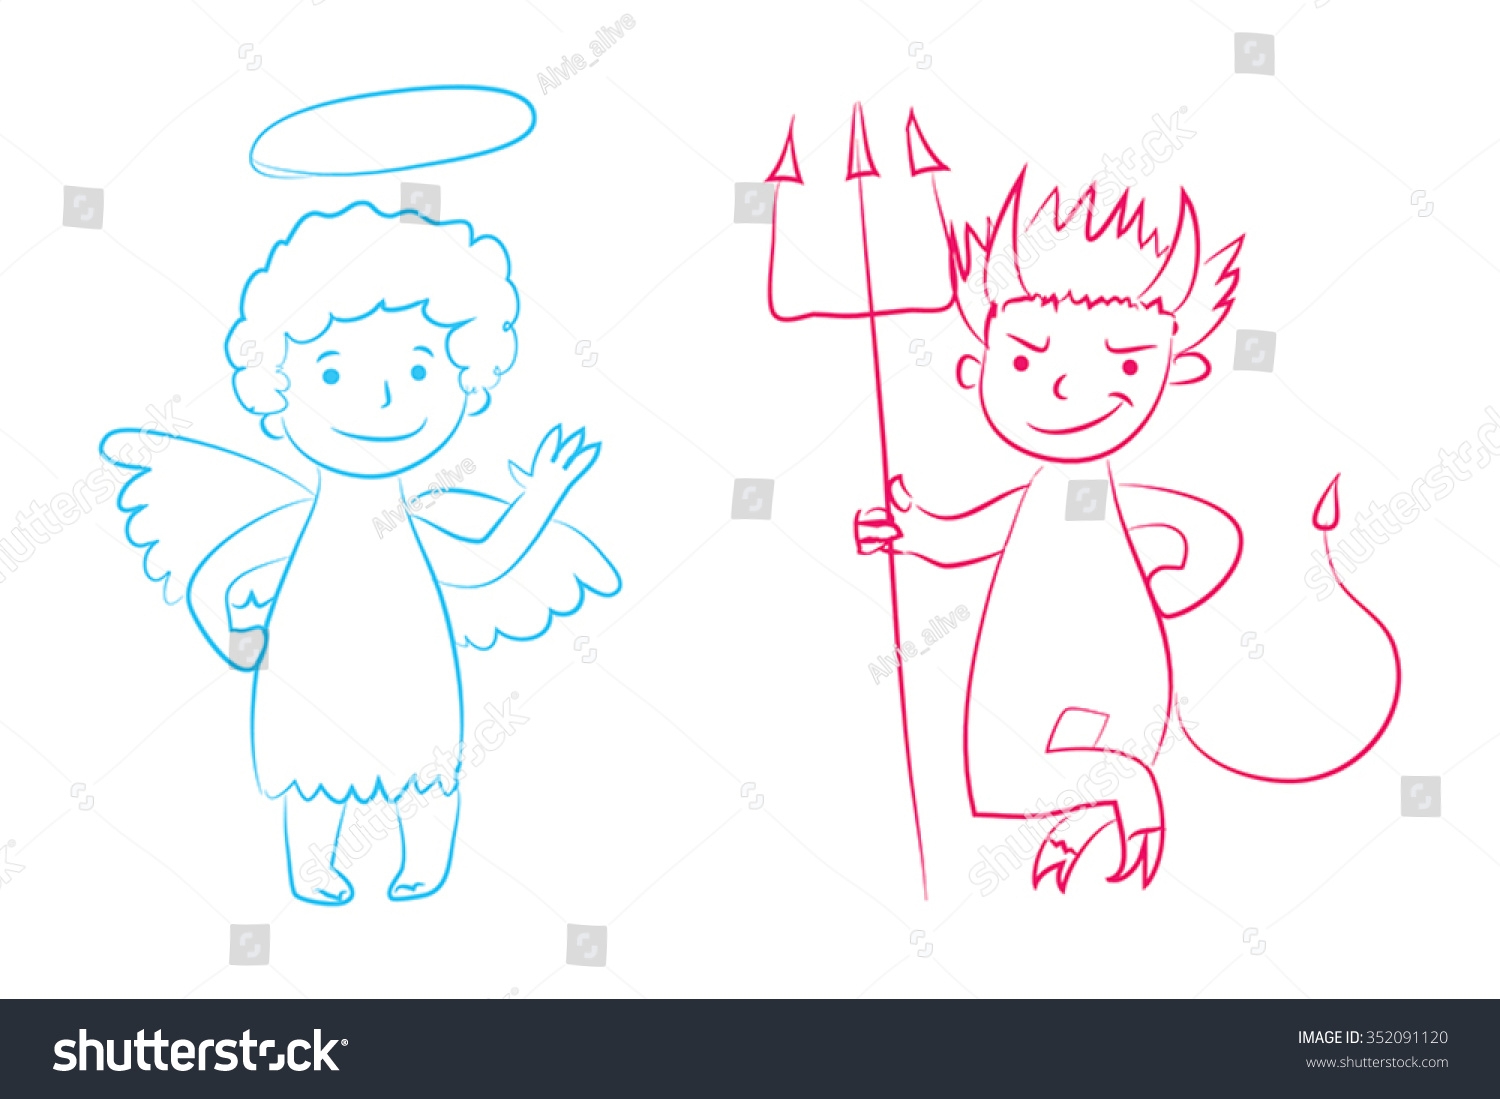 Раскраска ангел и демон для детей